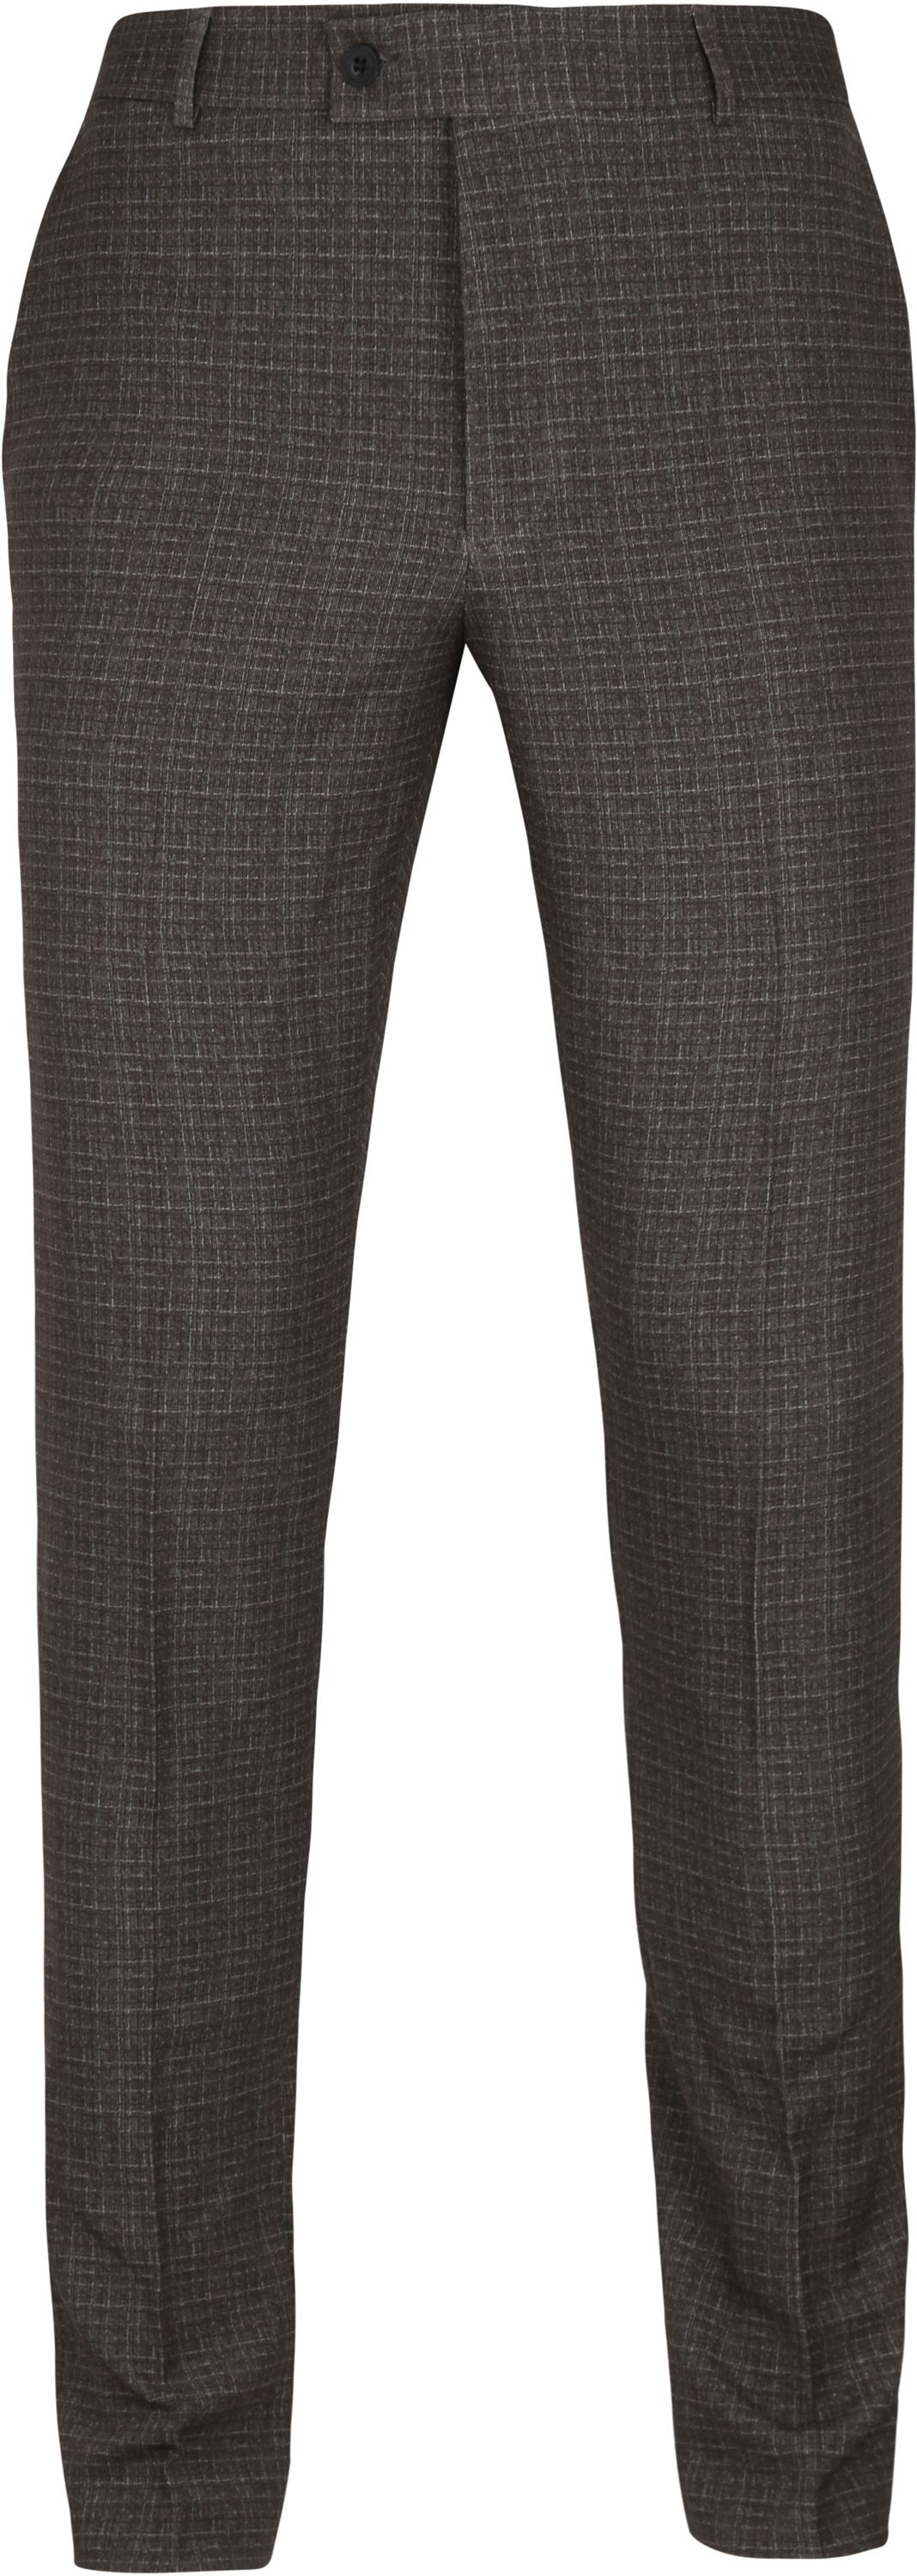 Suitable Pantalon Jersey Carreaux Marron taille 56